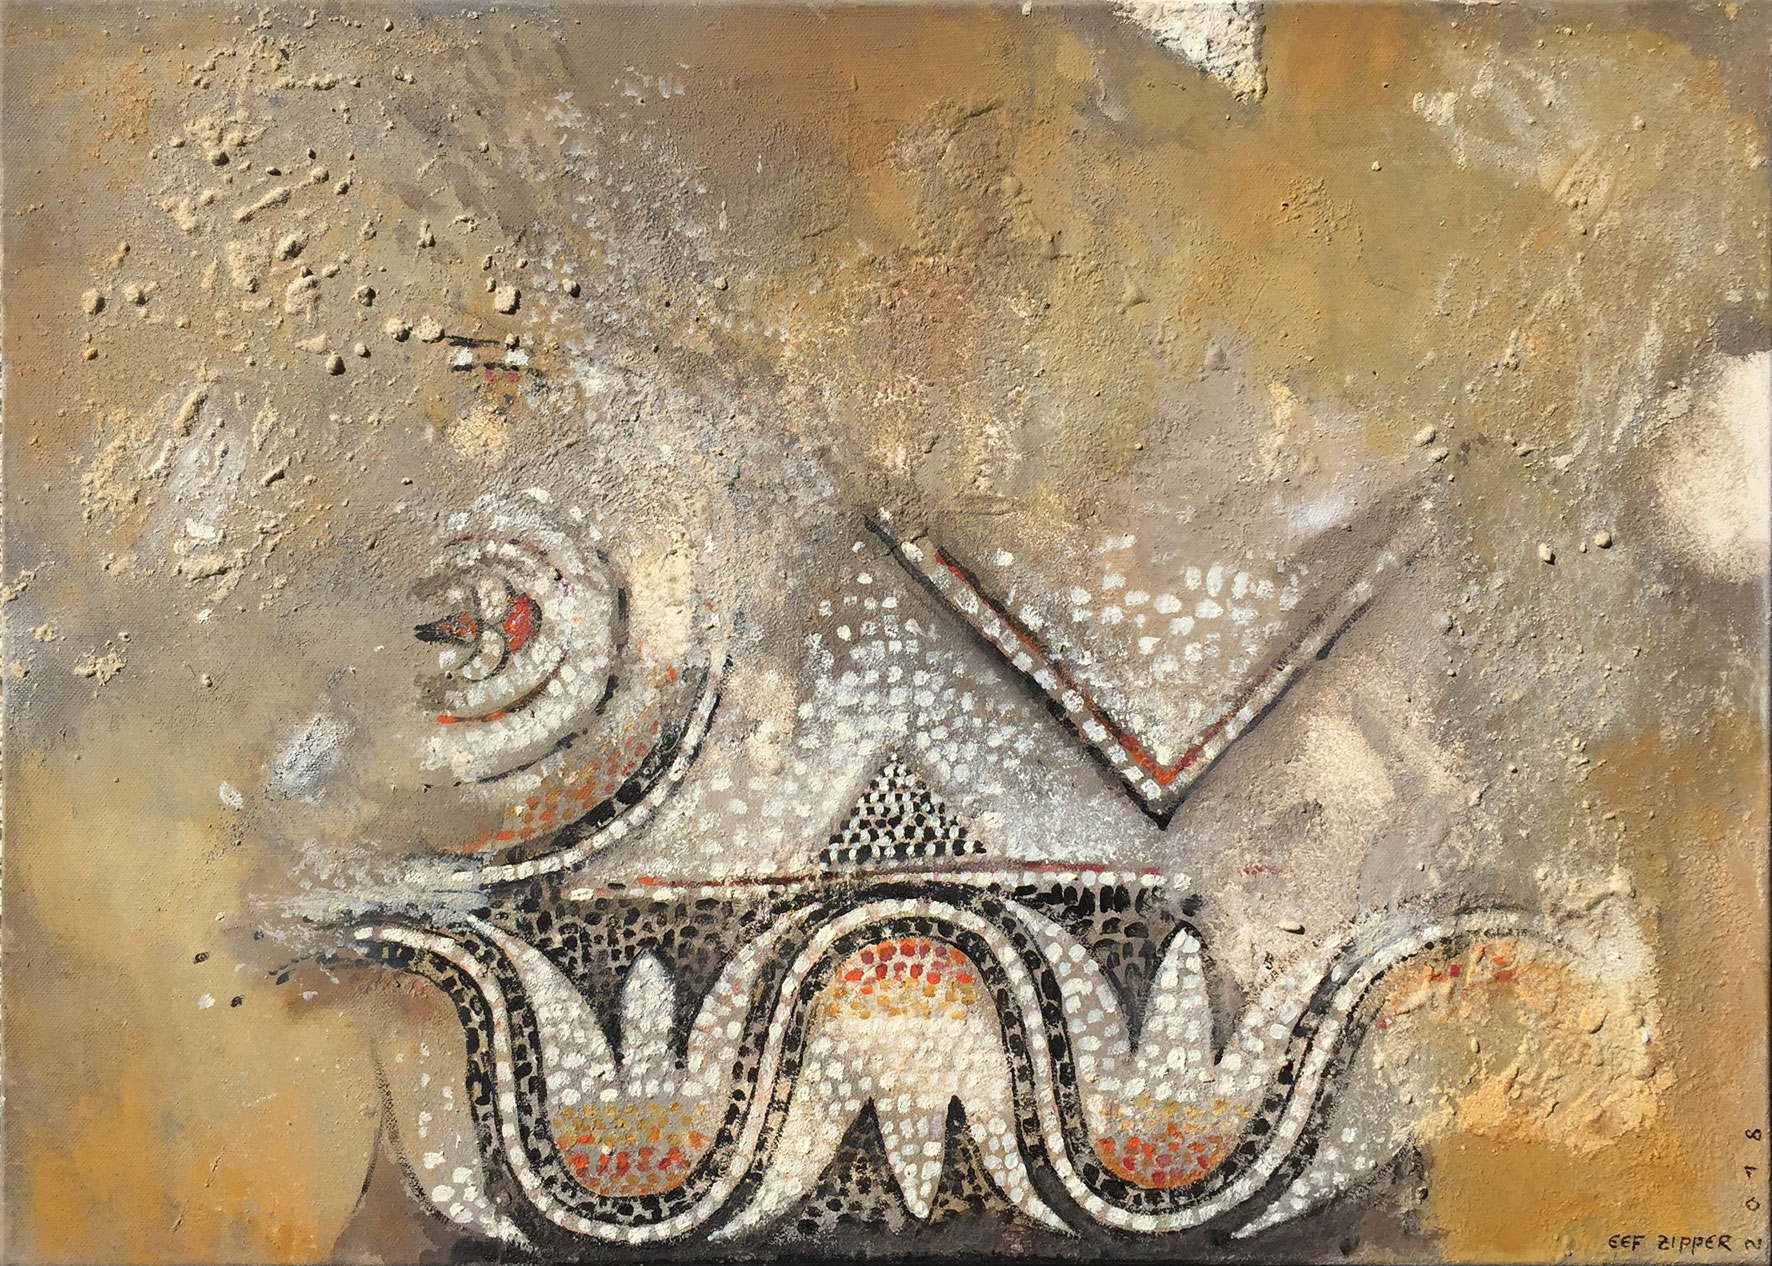 Farben der Byzanz; Eitempera auf Leinwand mit Sand, 2018, 70 x 50 cm